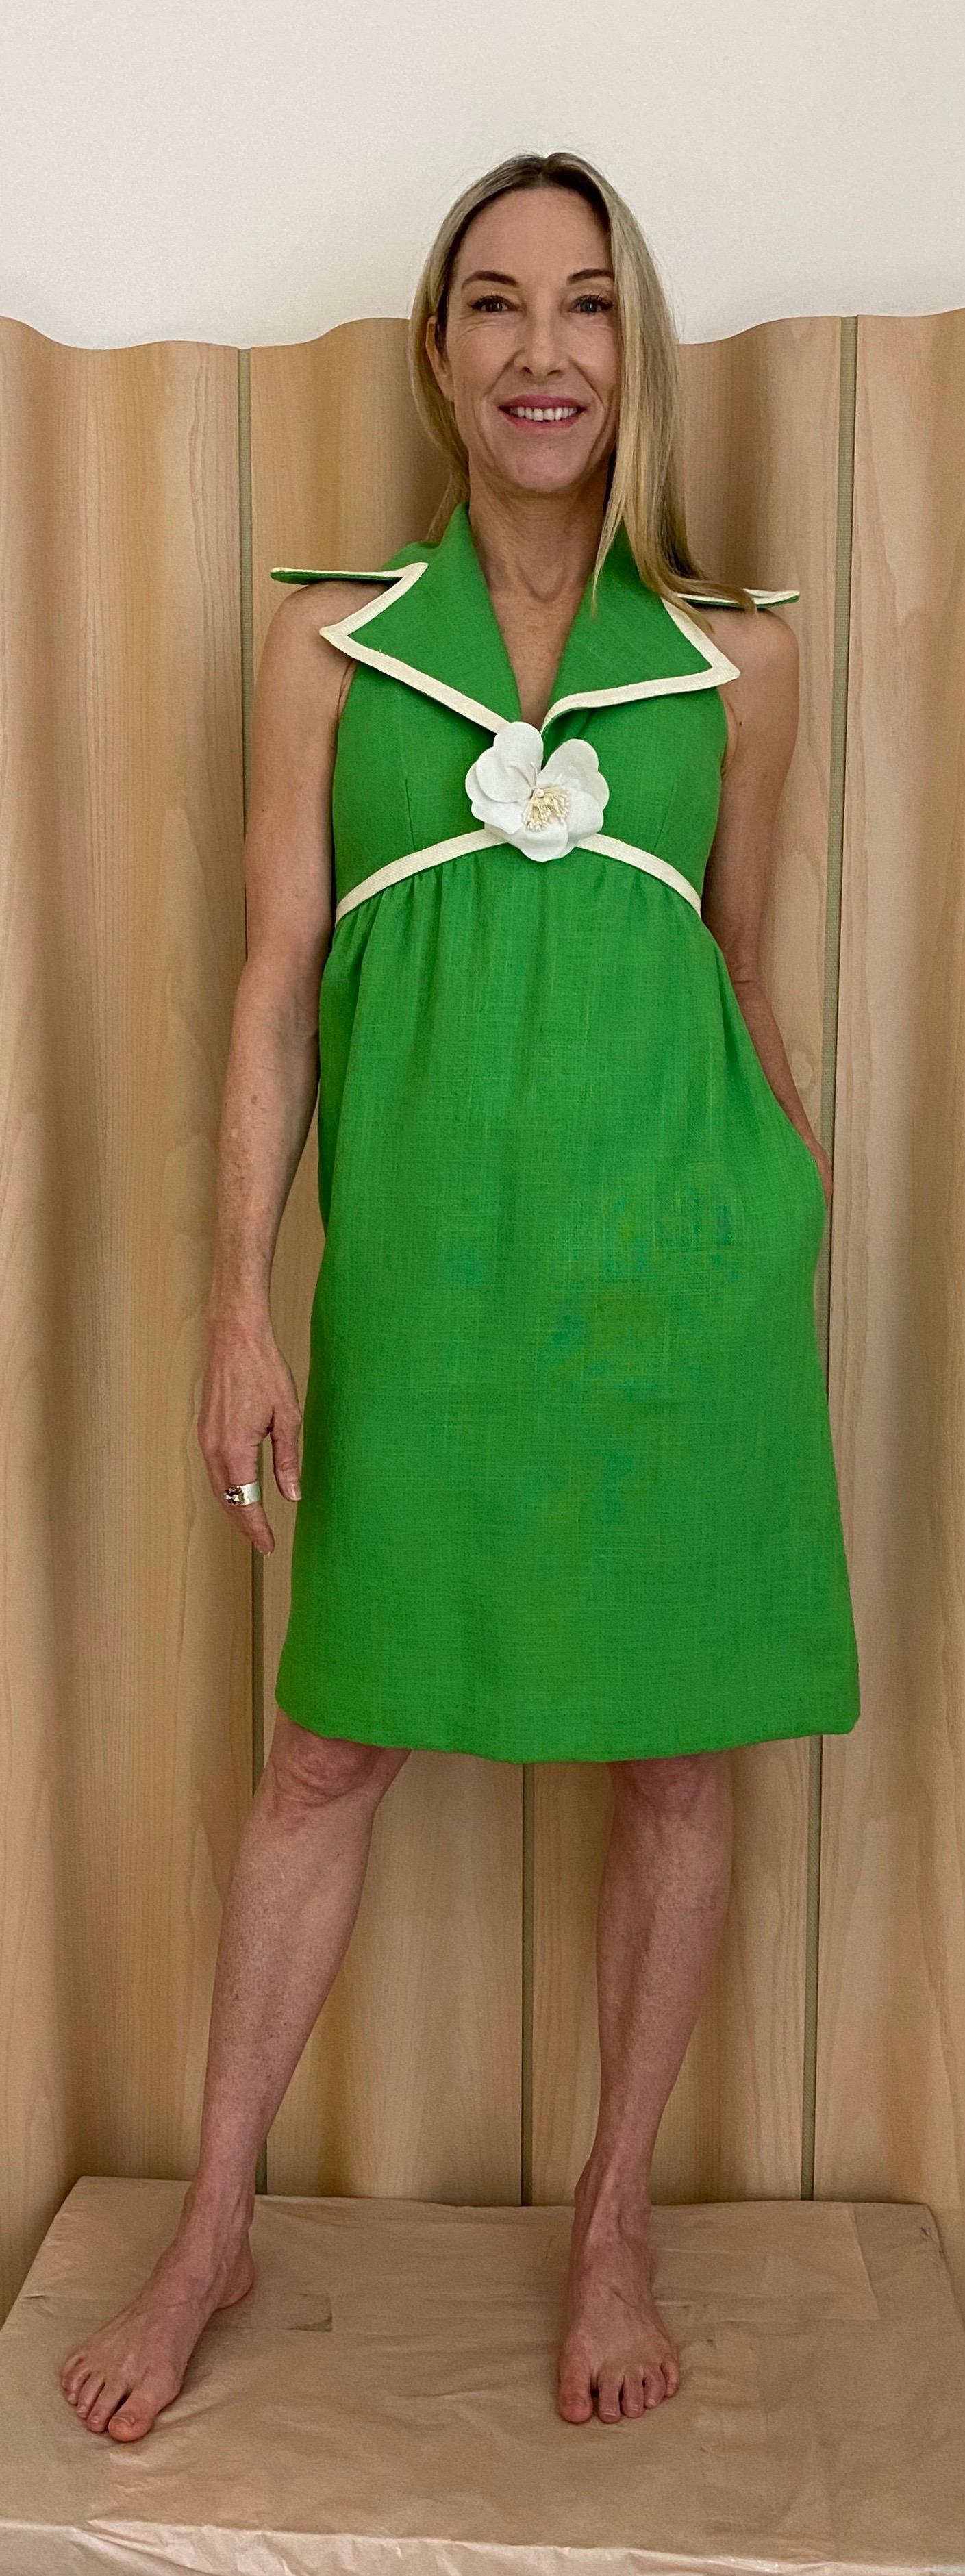 1960er Jahre Mollie Parnis Grünes Leinen  Cocktail-Tageskleid.  Das Kleid hat einen Metallreißverschluss.  Vollständig gefüttert in ausgezeichnetem Zustand. keine Flecken oder Löcher. Taschen.

Am besten passt Größe 2/4 / Small.
Büste: 34